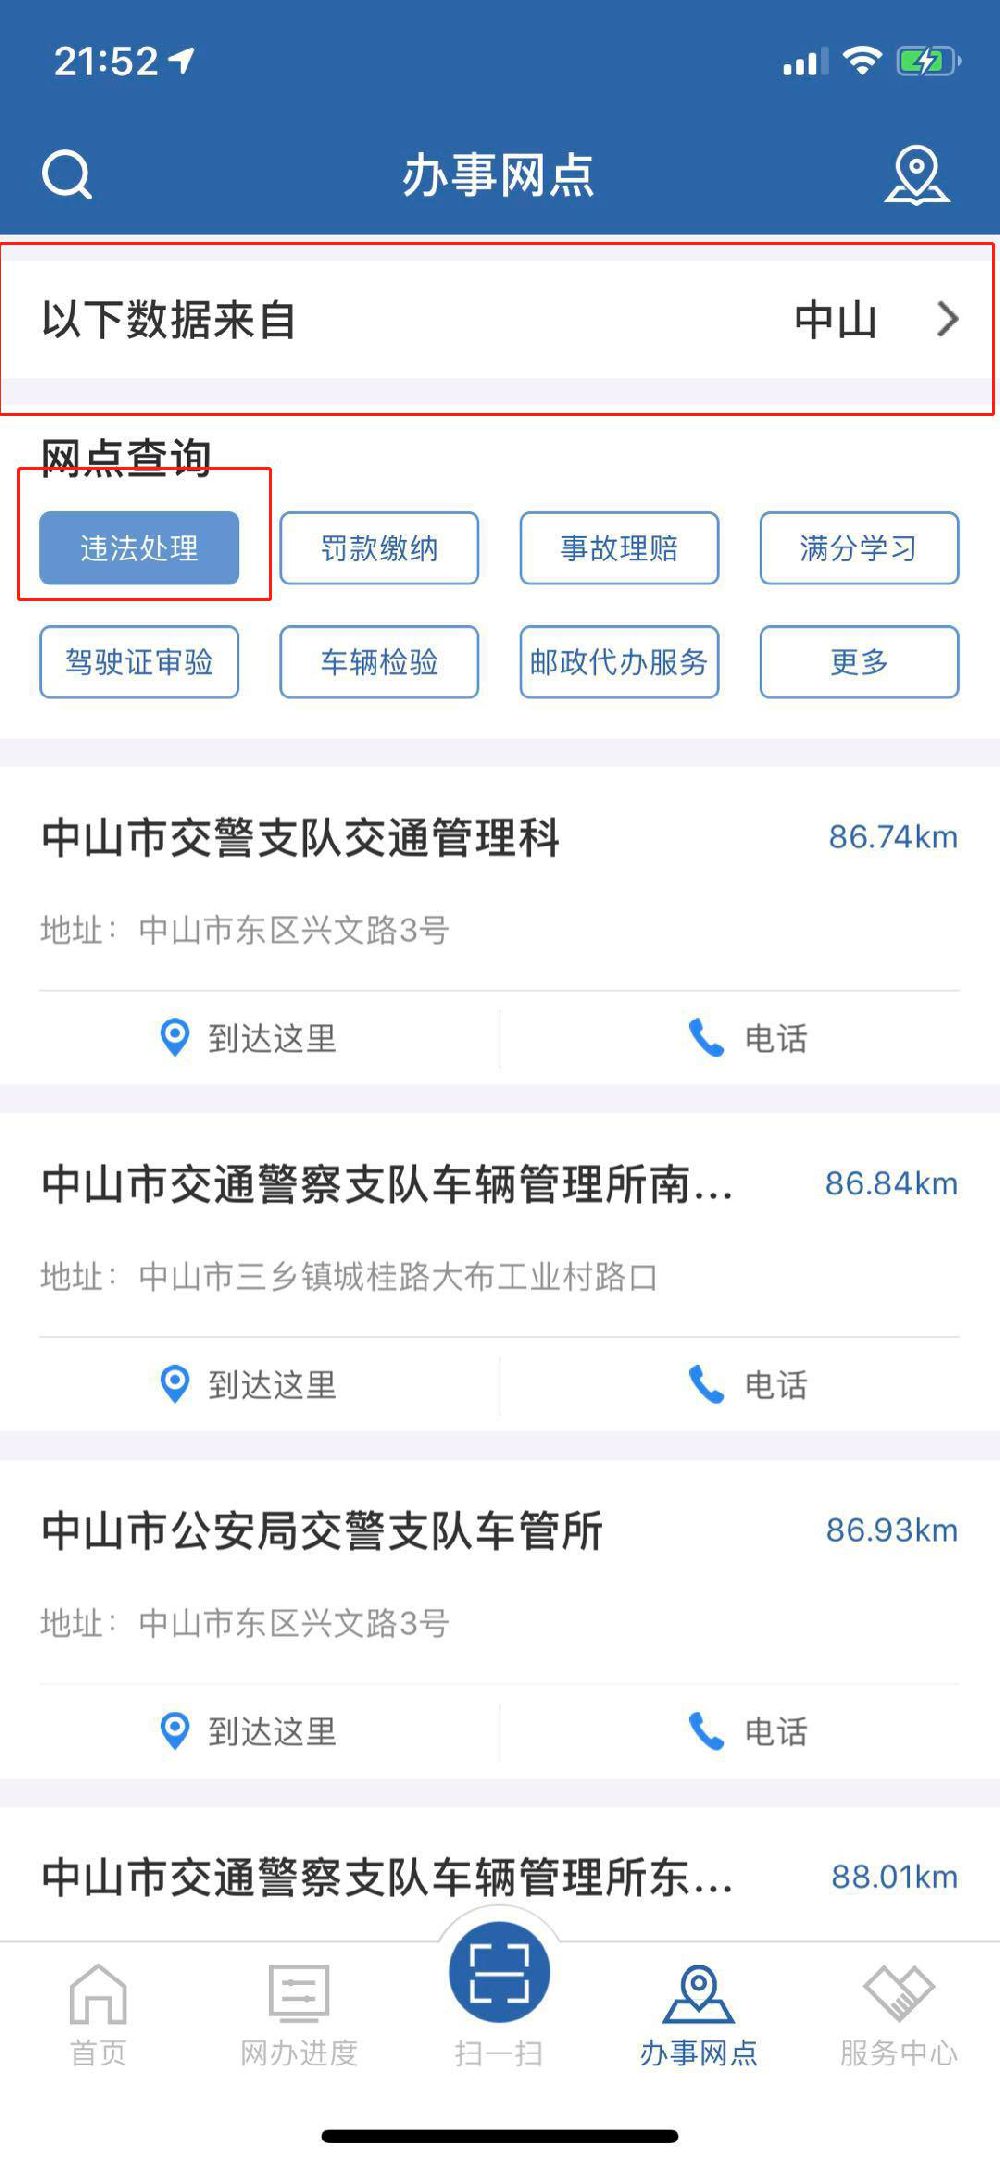 微信搜索并关注深圳本地宝,回复【违章】,就可以进入交通违法查询及